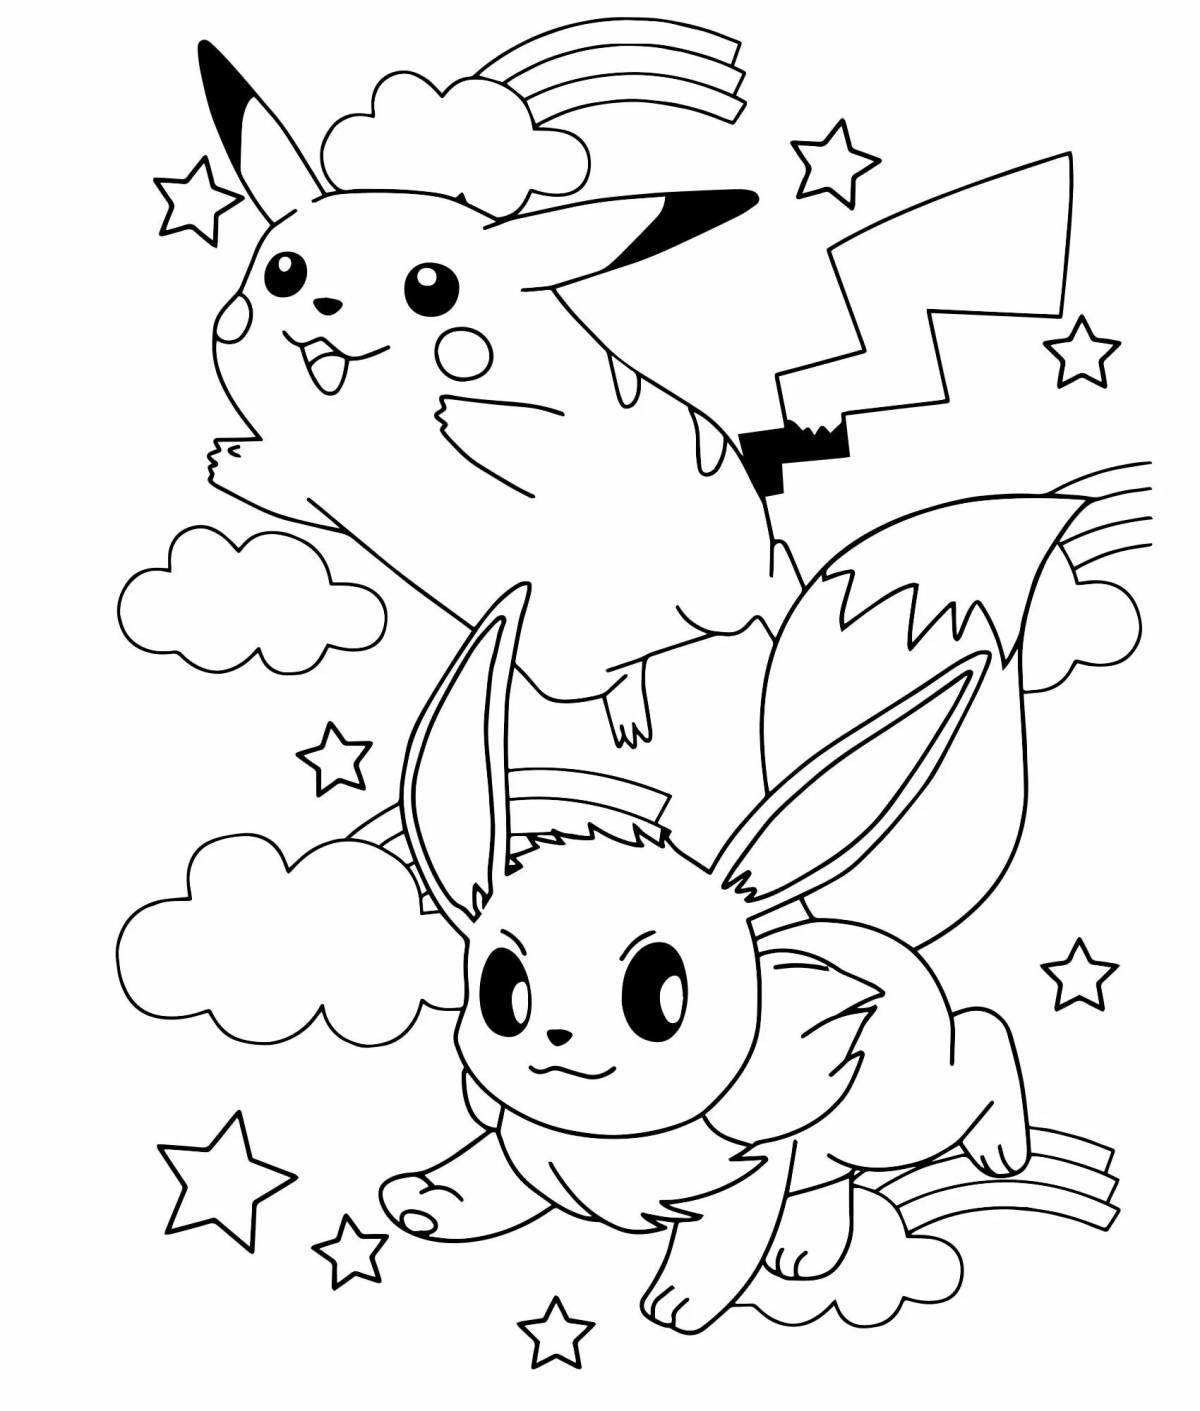 Pokémon coloring pages